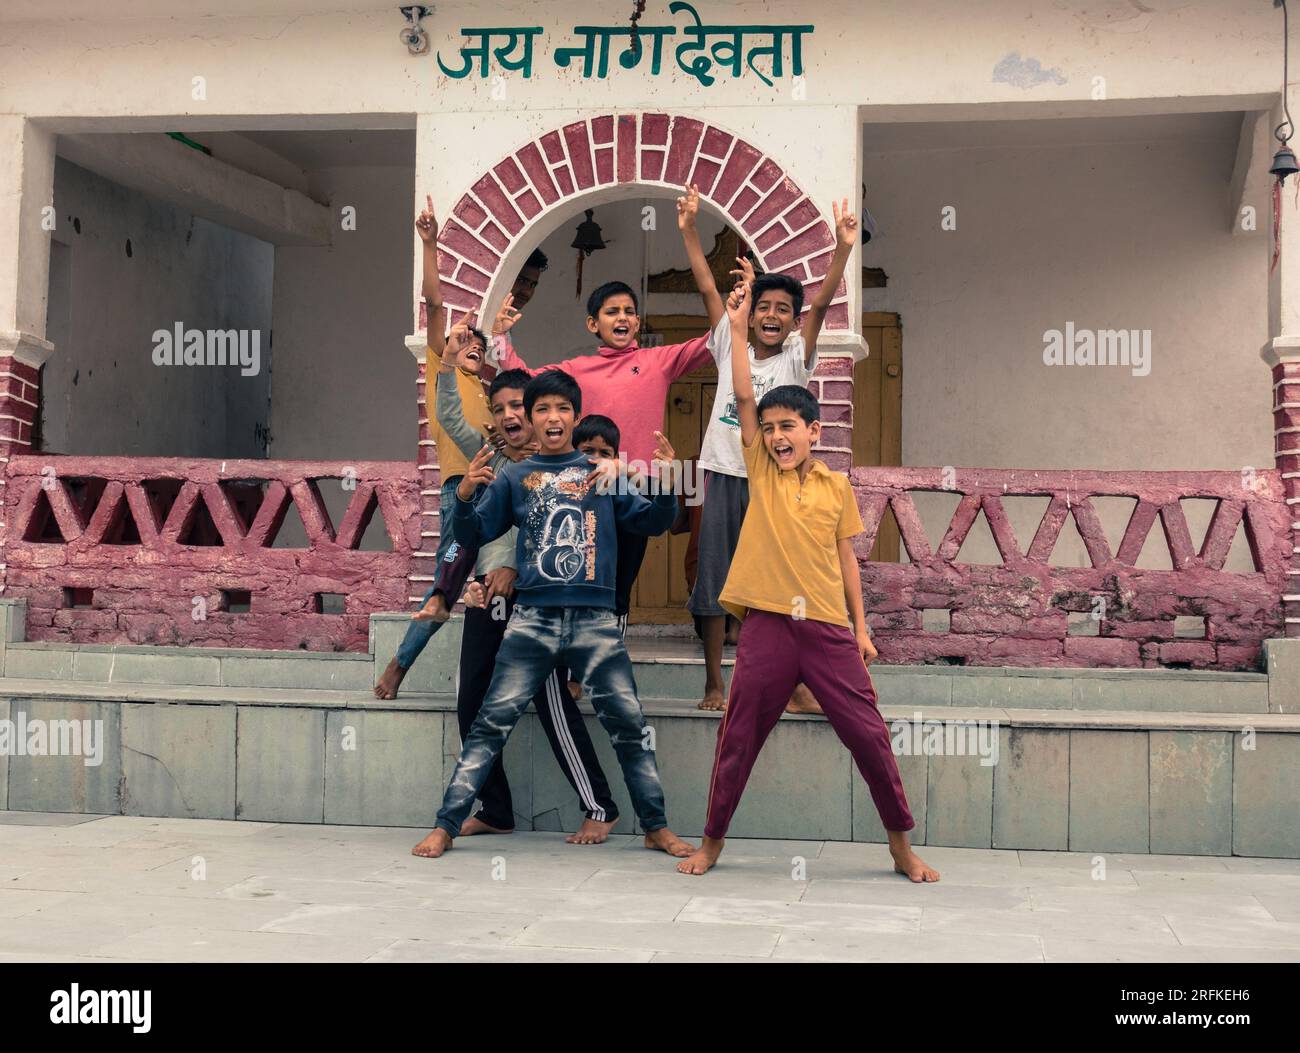 Oktober 14. 2022 Uttarakhand, Indien. Junge einheimische Jungs genießen den Tempelgang in Uttarakhand, Indien. Sorgenfreie Momente des Gelächters und der Freundschaft. Stockfoto